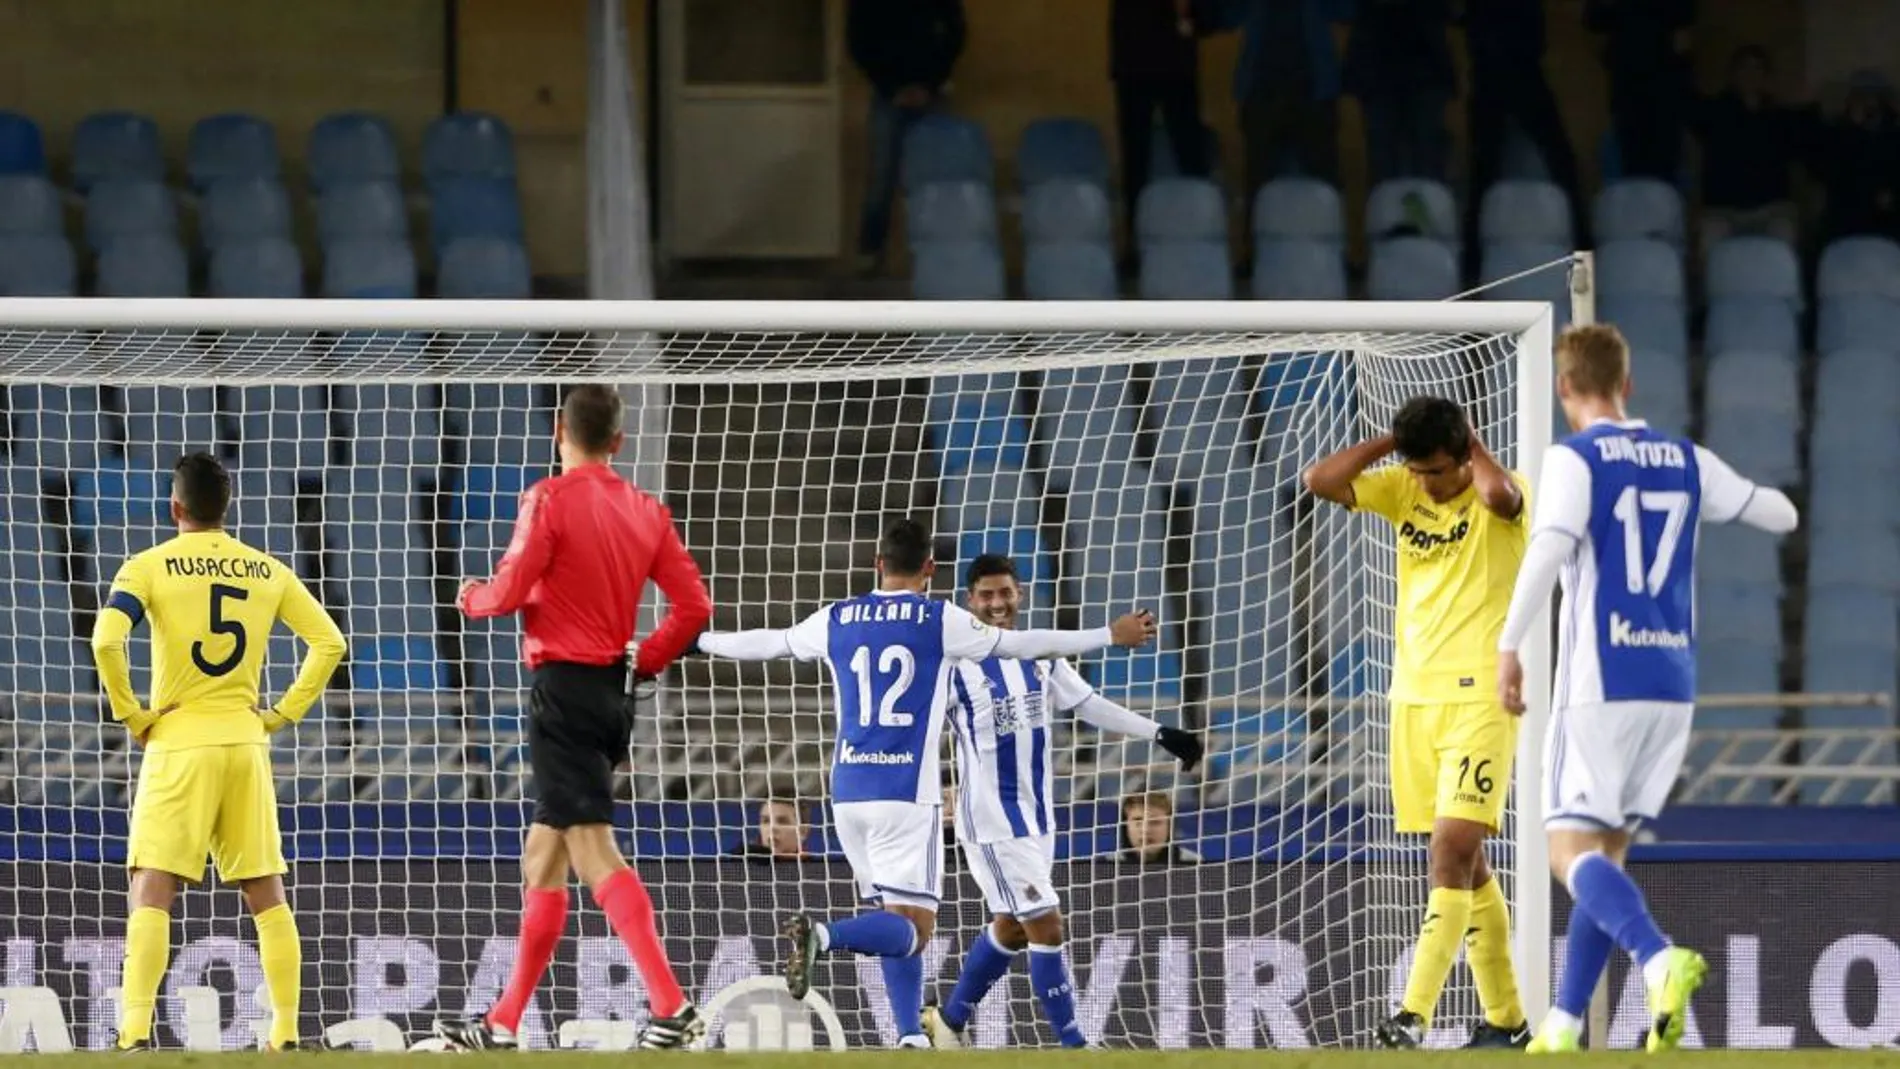 El delantero mexicano de la Real Sociedad Carlos Vela celebra con su compañero, el delantero brasileño Willian José el gol que ha marcado, el segundo del equipo frente al Villarreal